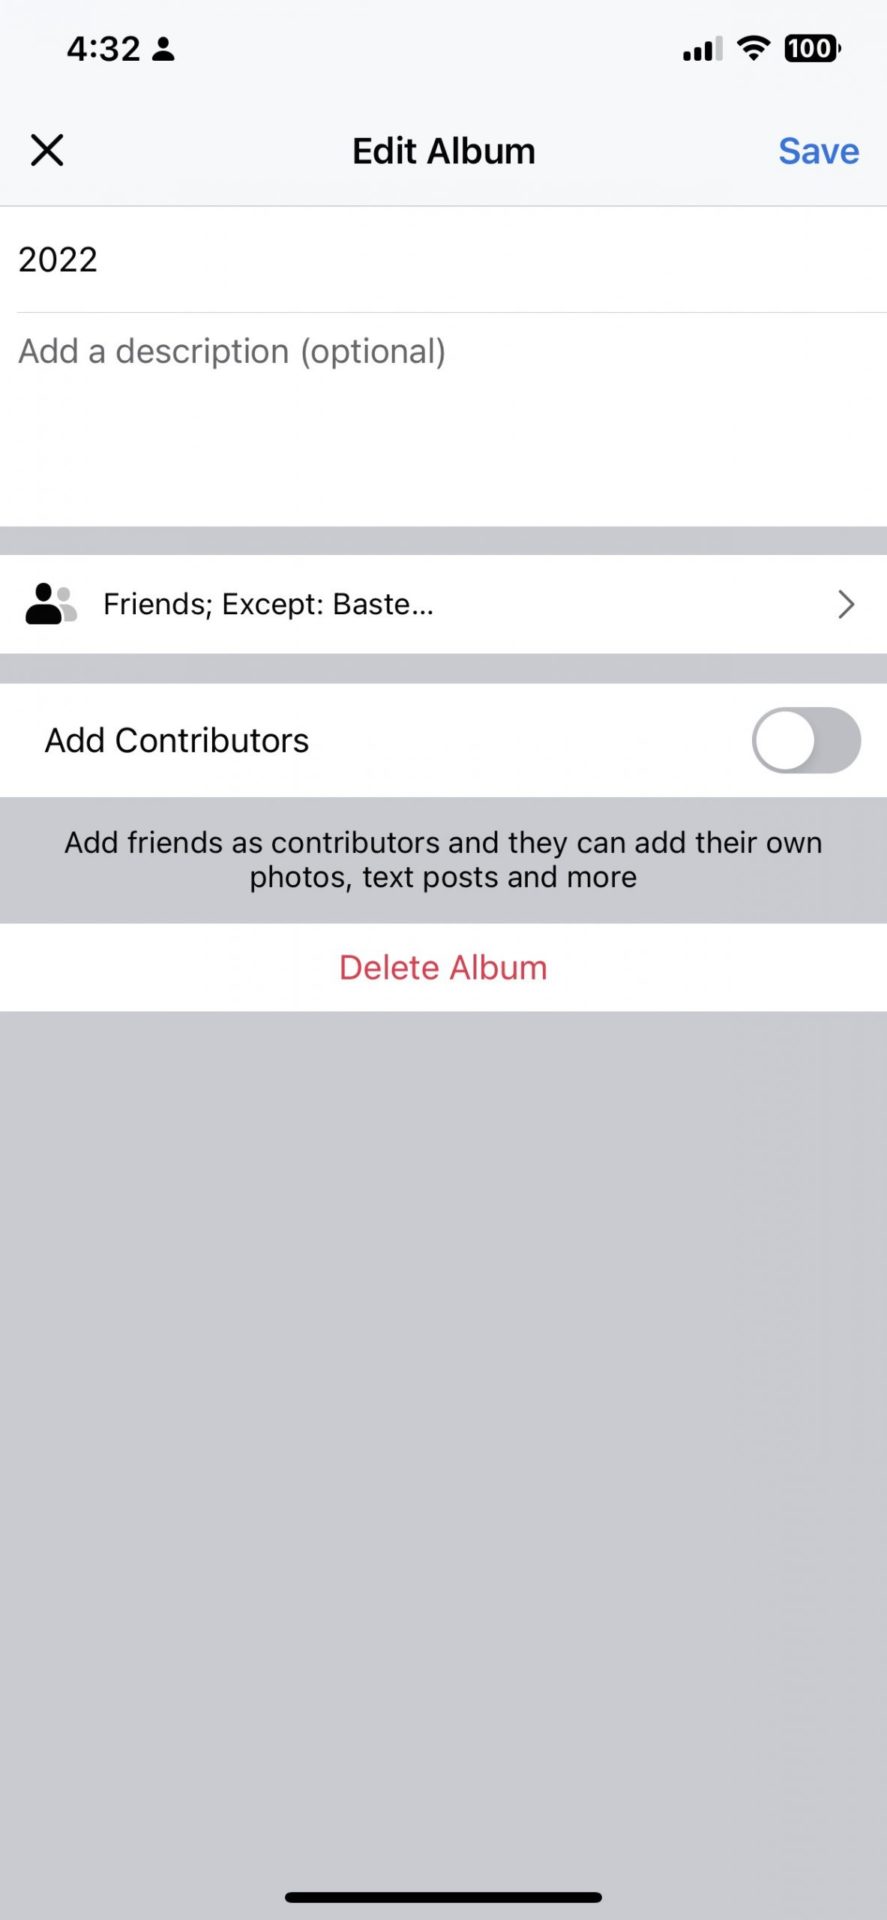 facebook iphone app - delete album button